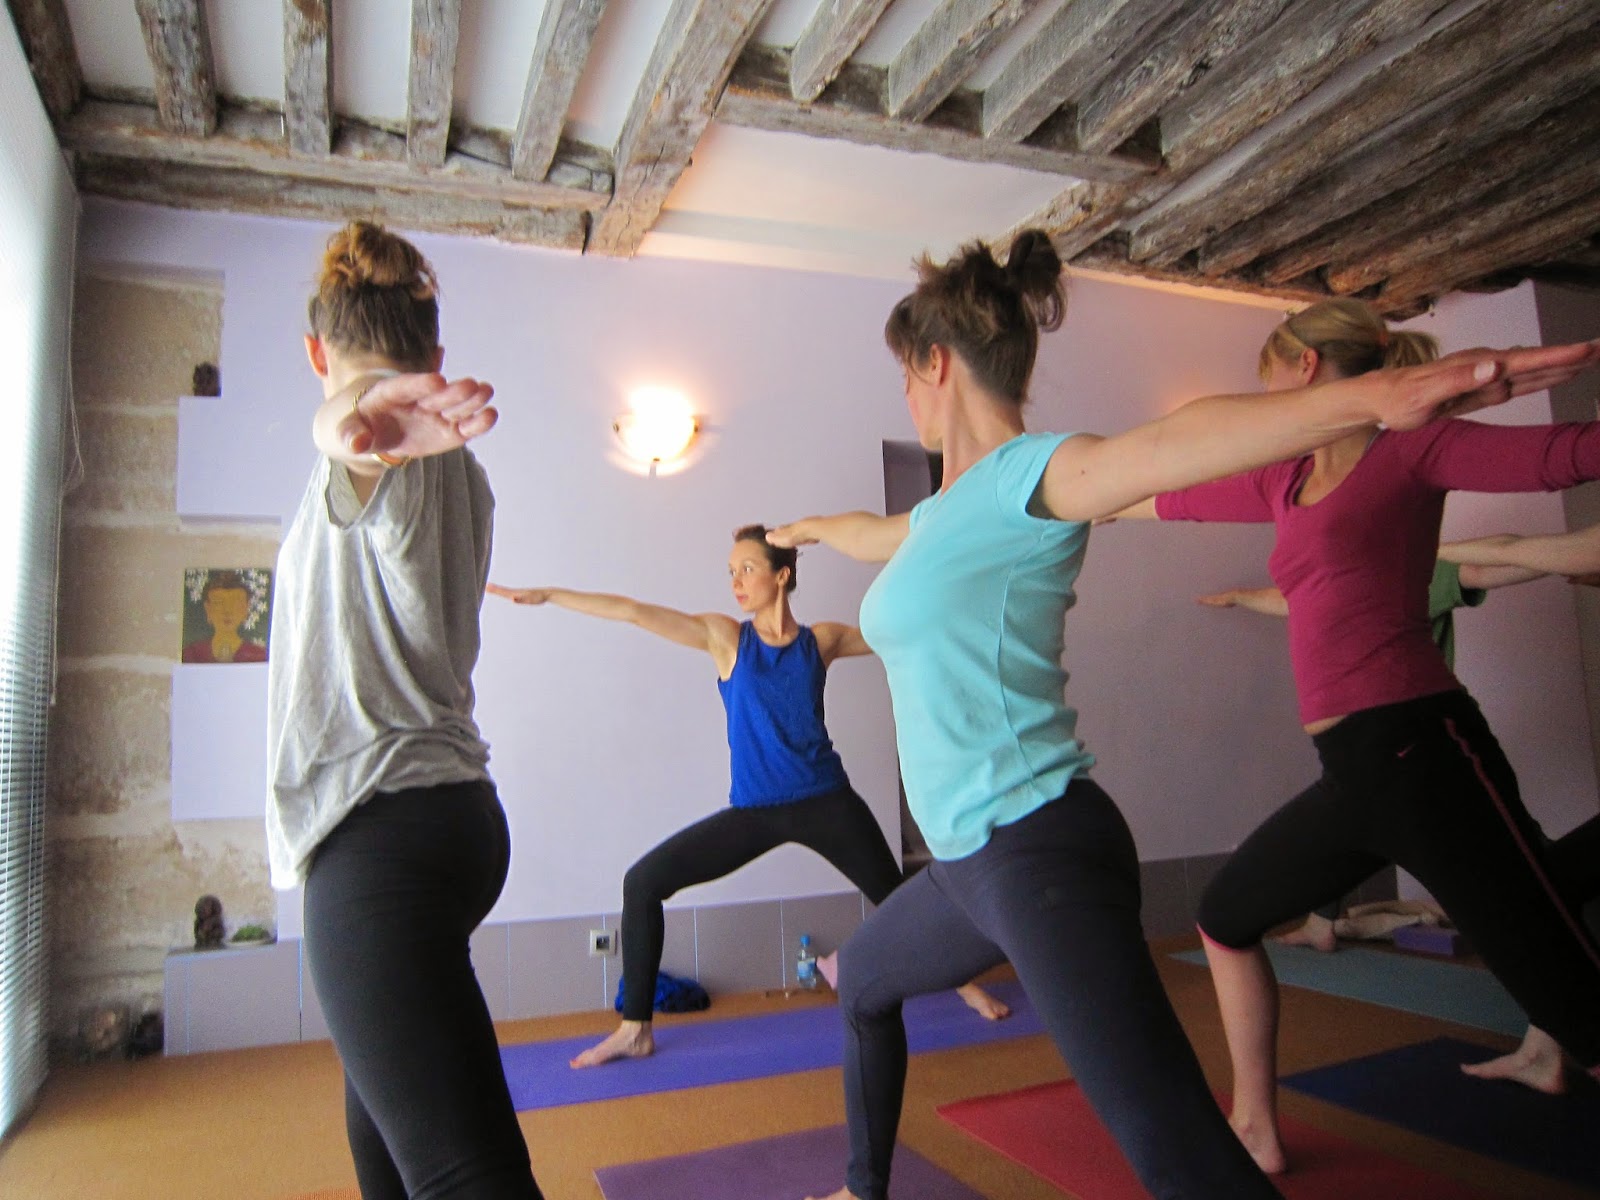 Yoga con bloques / Yoga blocks  Kundalini yoga, Yoga tutorial, Yoga